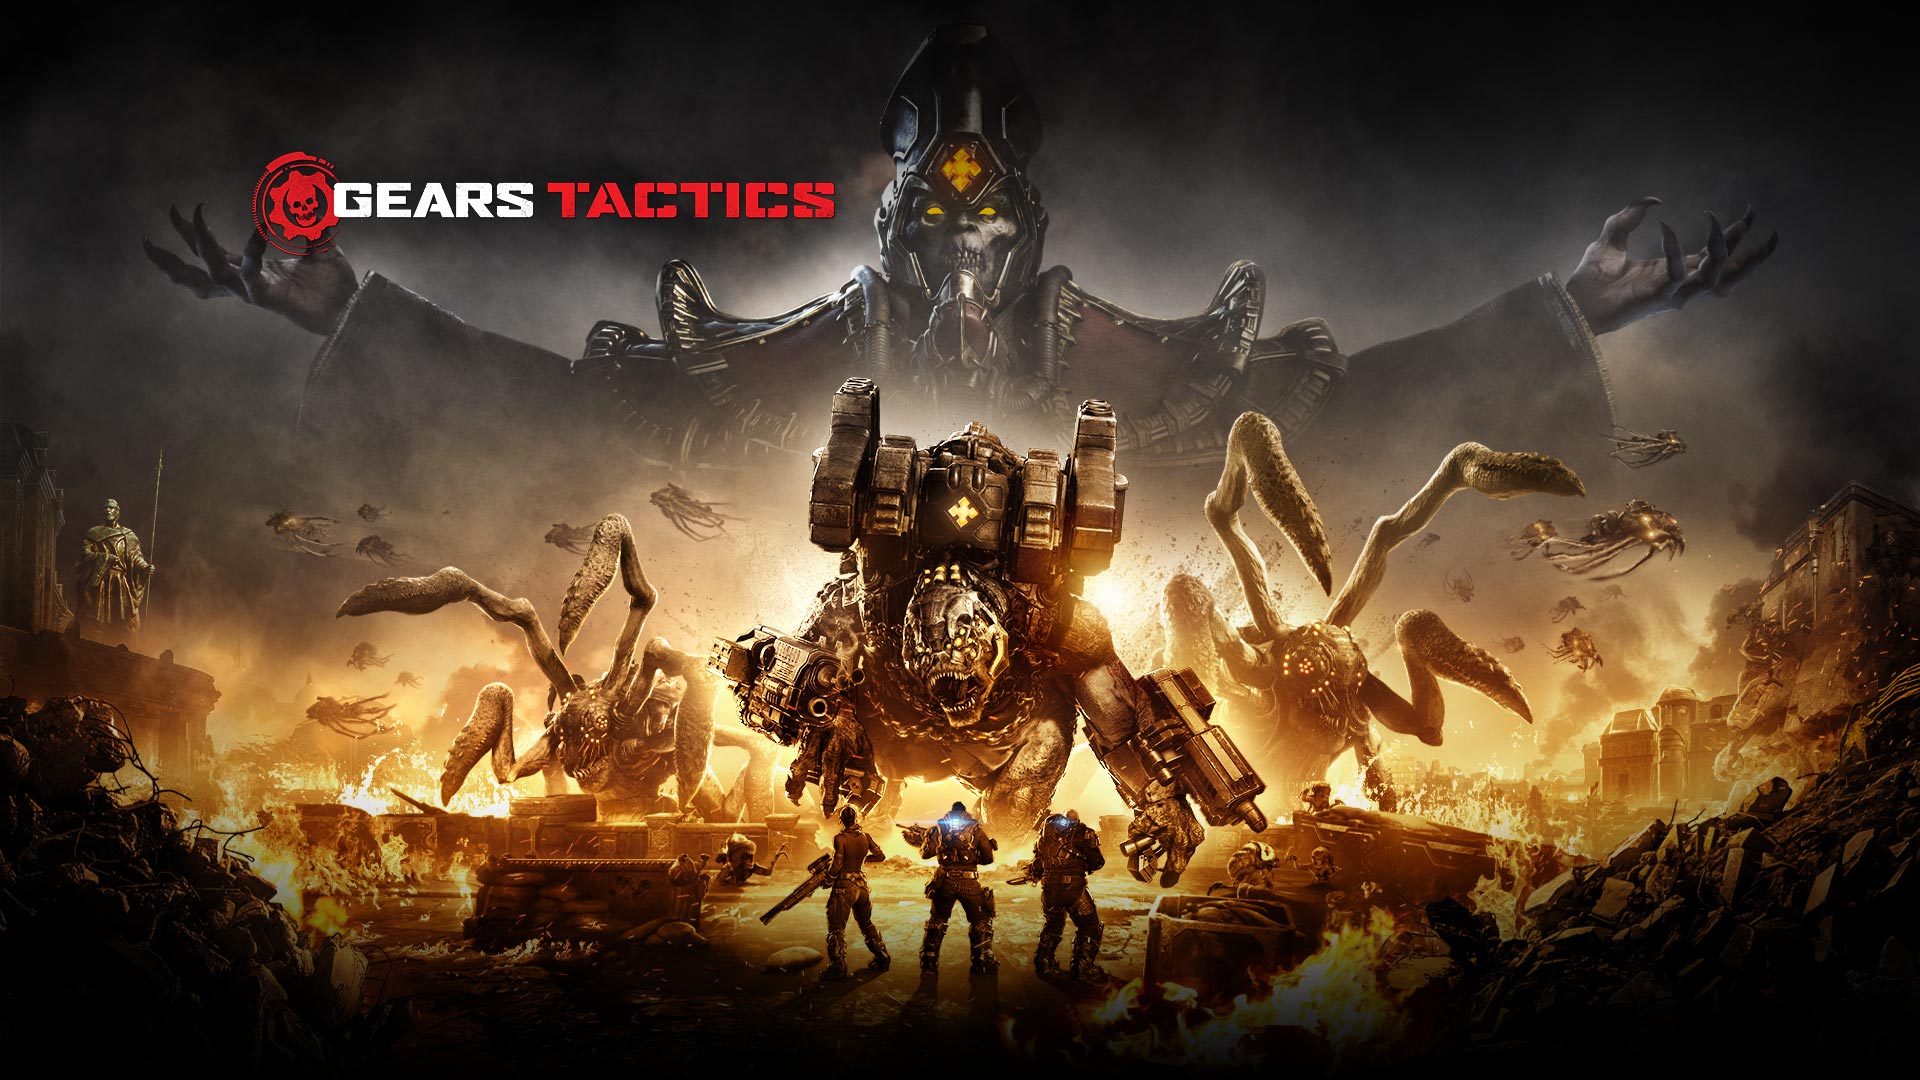 Gears 作戦 ロゴで、周囲のエリアが燃えている中、3 人のキャラクターがいくつかの大きなモンスターと戦おうとする場面